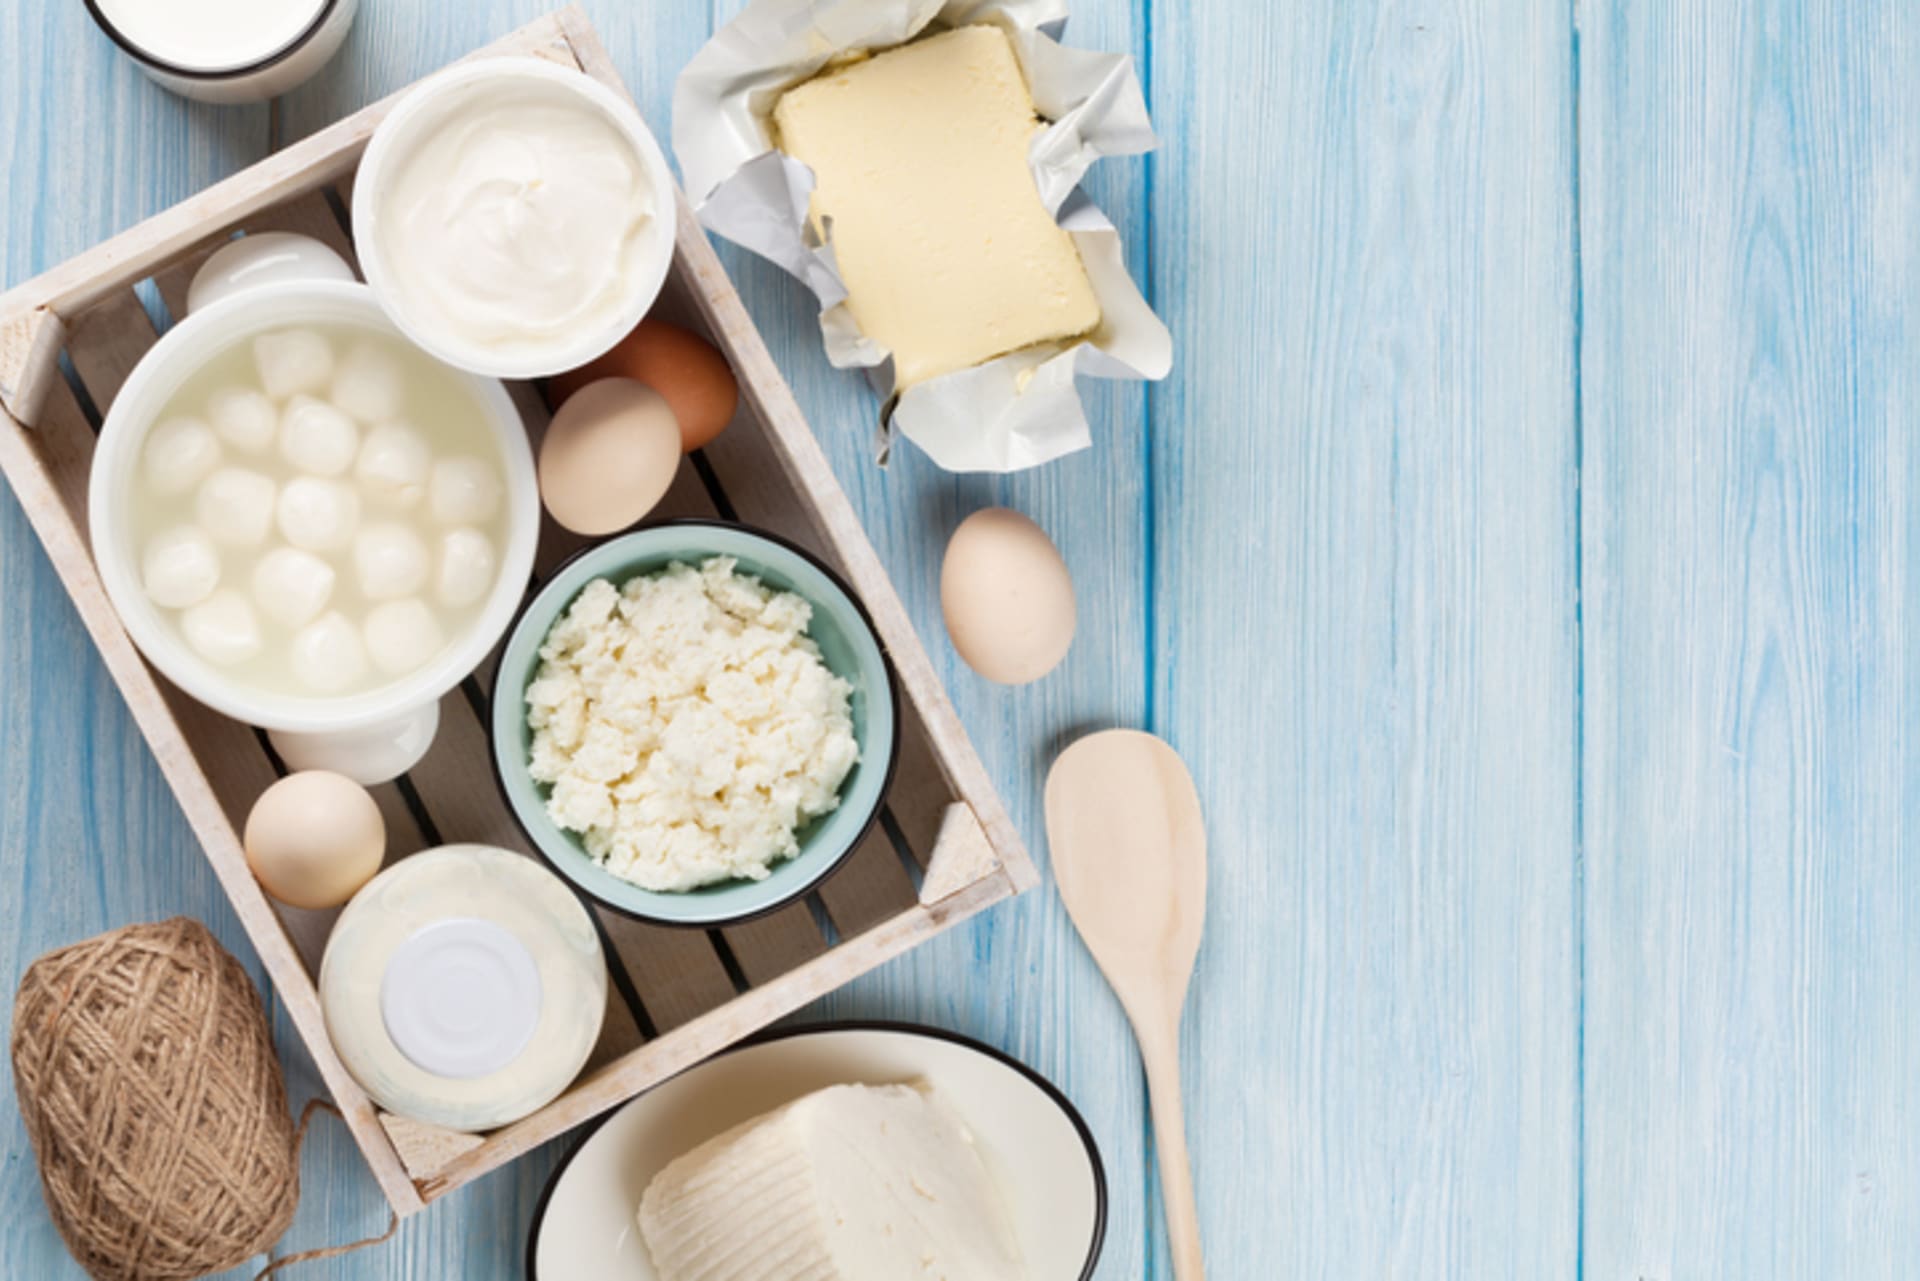 Věděli jste, že výrobek s názvem "máslíčko" vůbec nemusí být máslo?